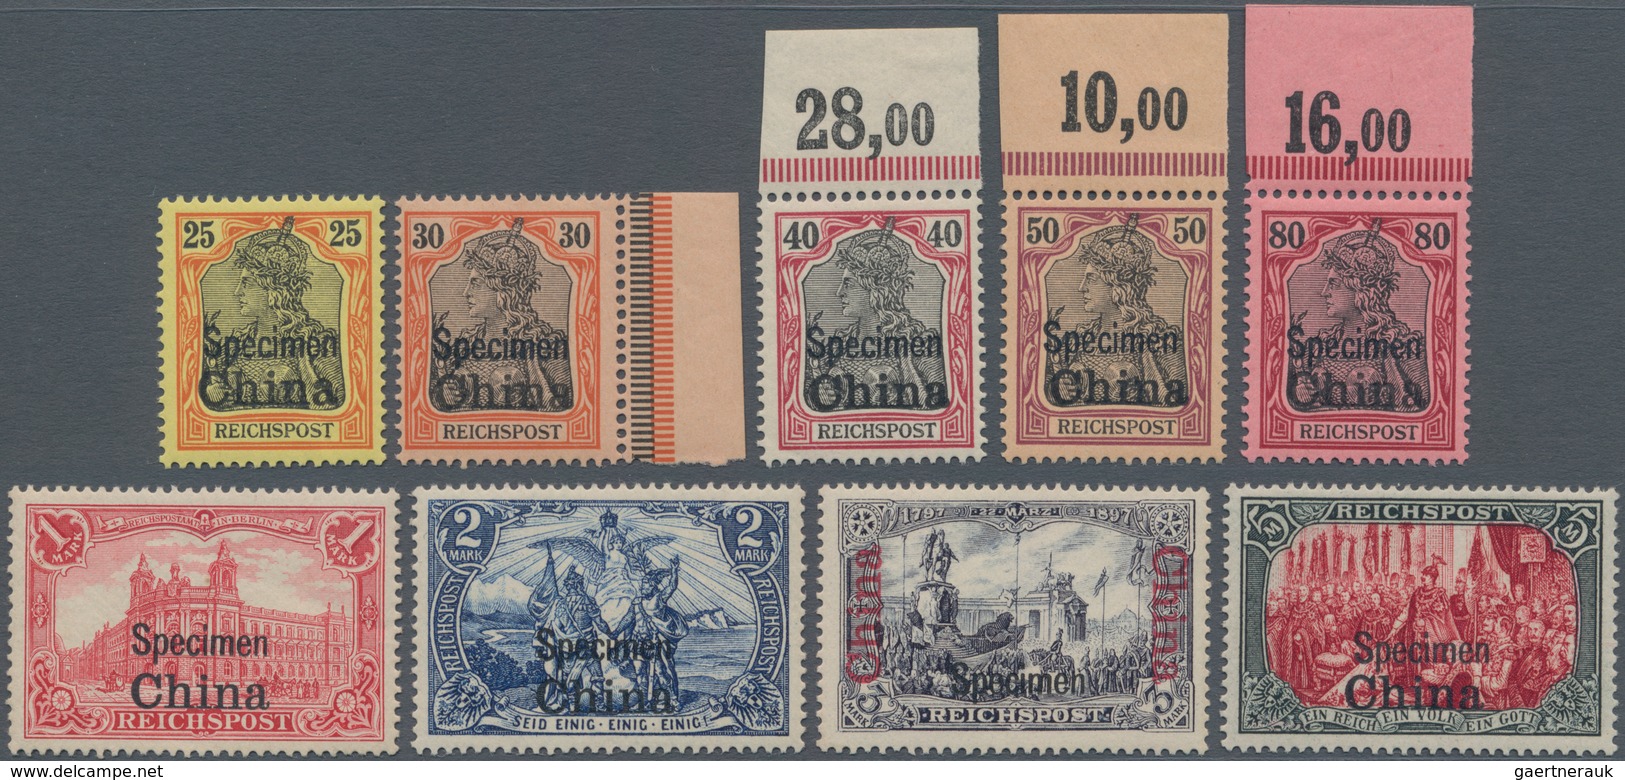 Deutsche Post In China: 1901: 3 Pfg - 5 Mk, Germania-Marken Mit Aufdruck "China" Und Zusätzlichem Bu - China (offices)